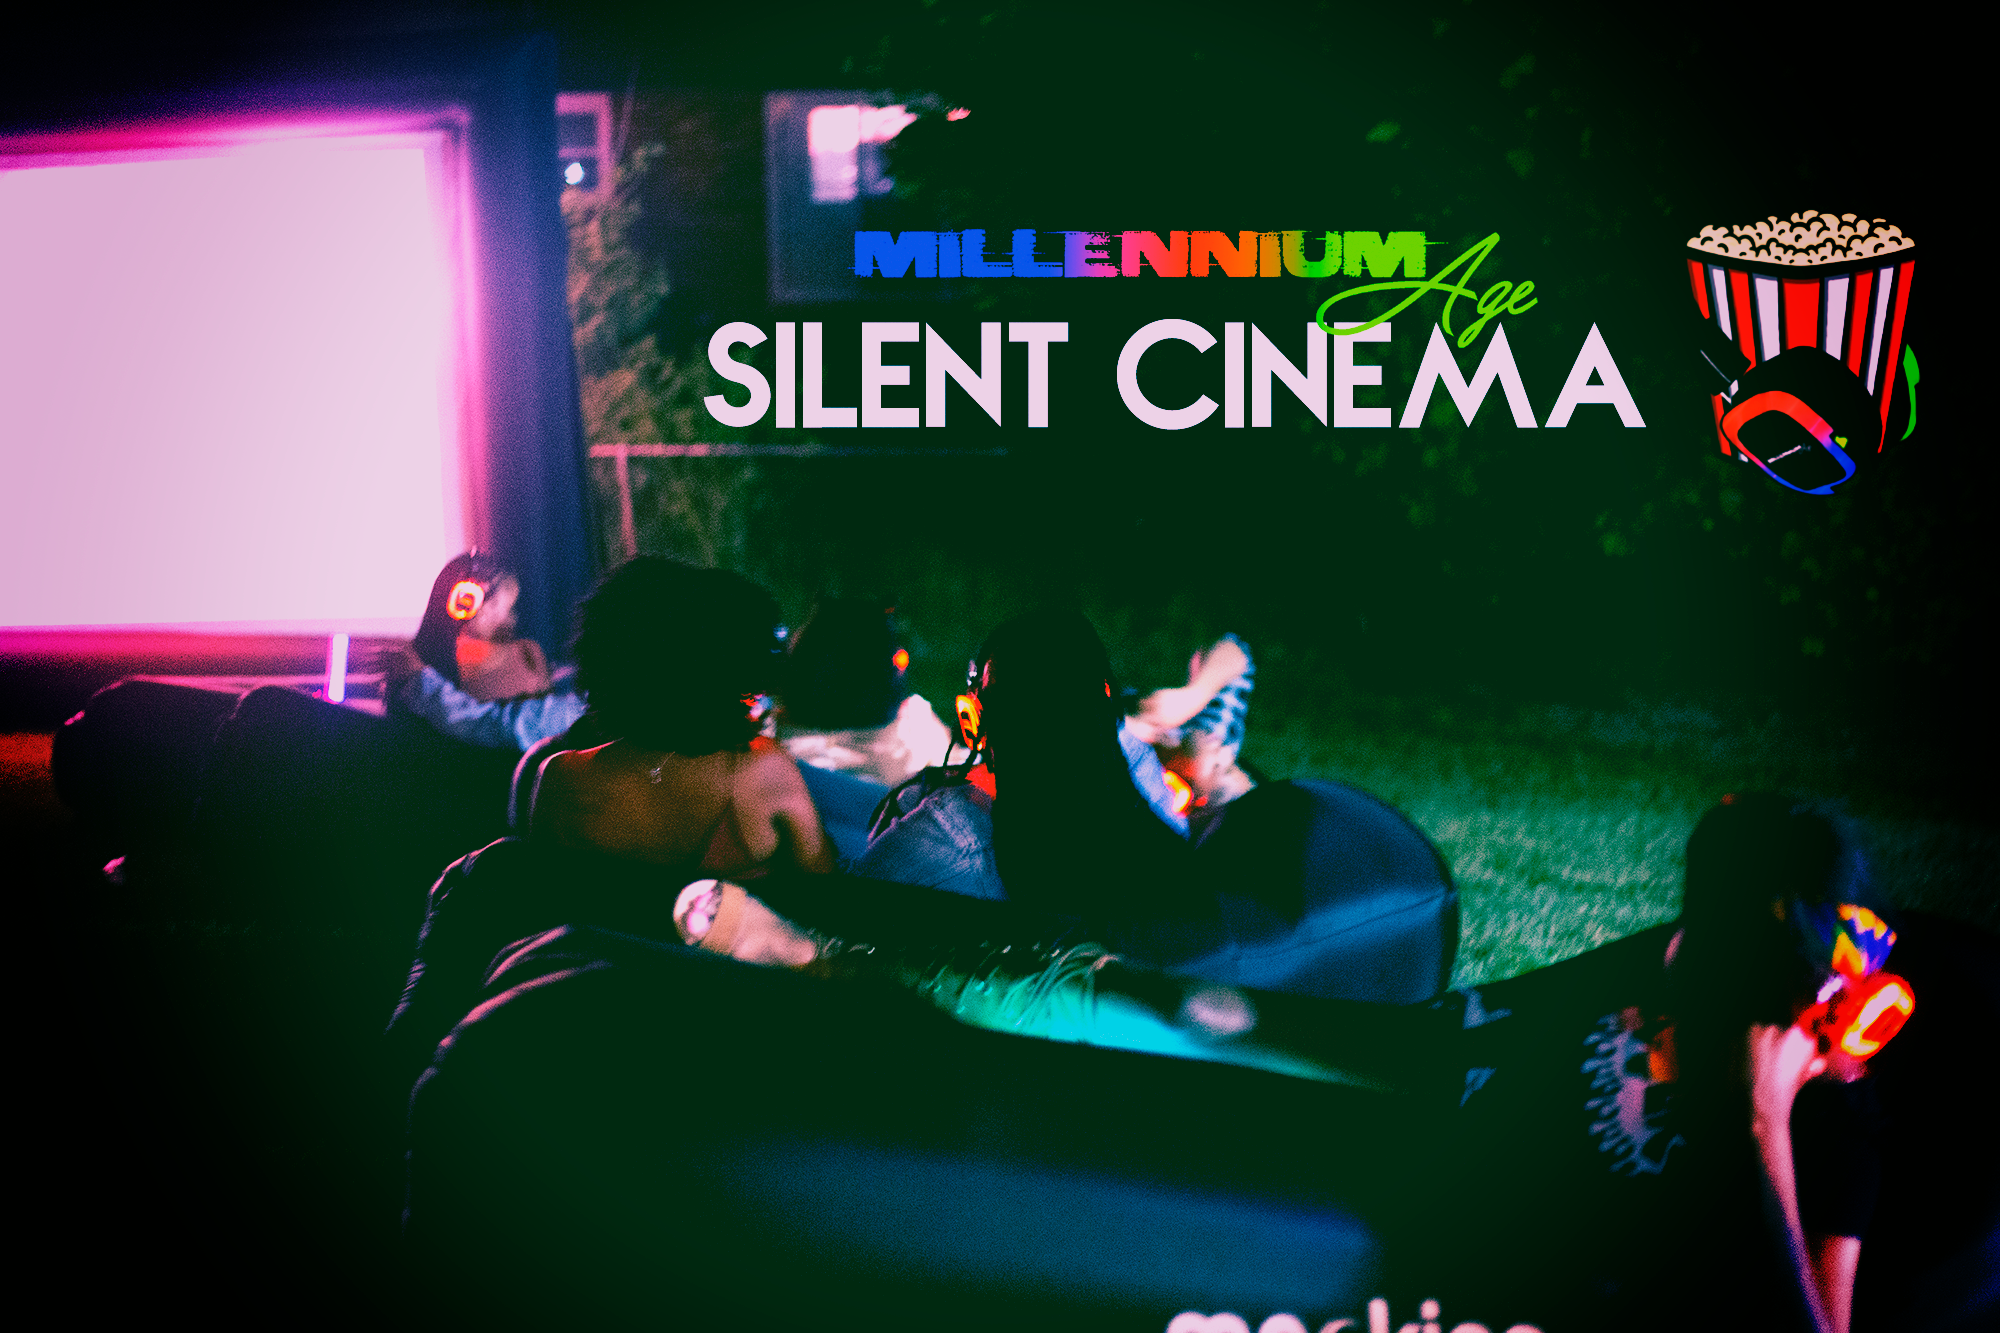 MILLENNIUM AGE HOSTS: SILENT CINEMA DATE NIGHT EDITION